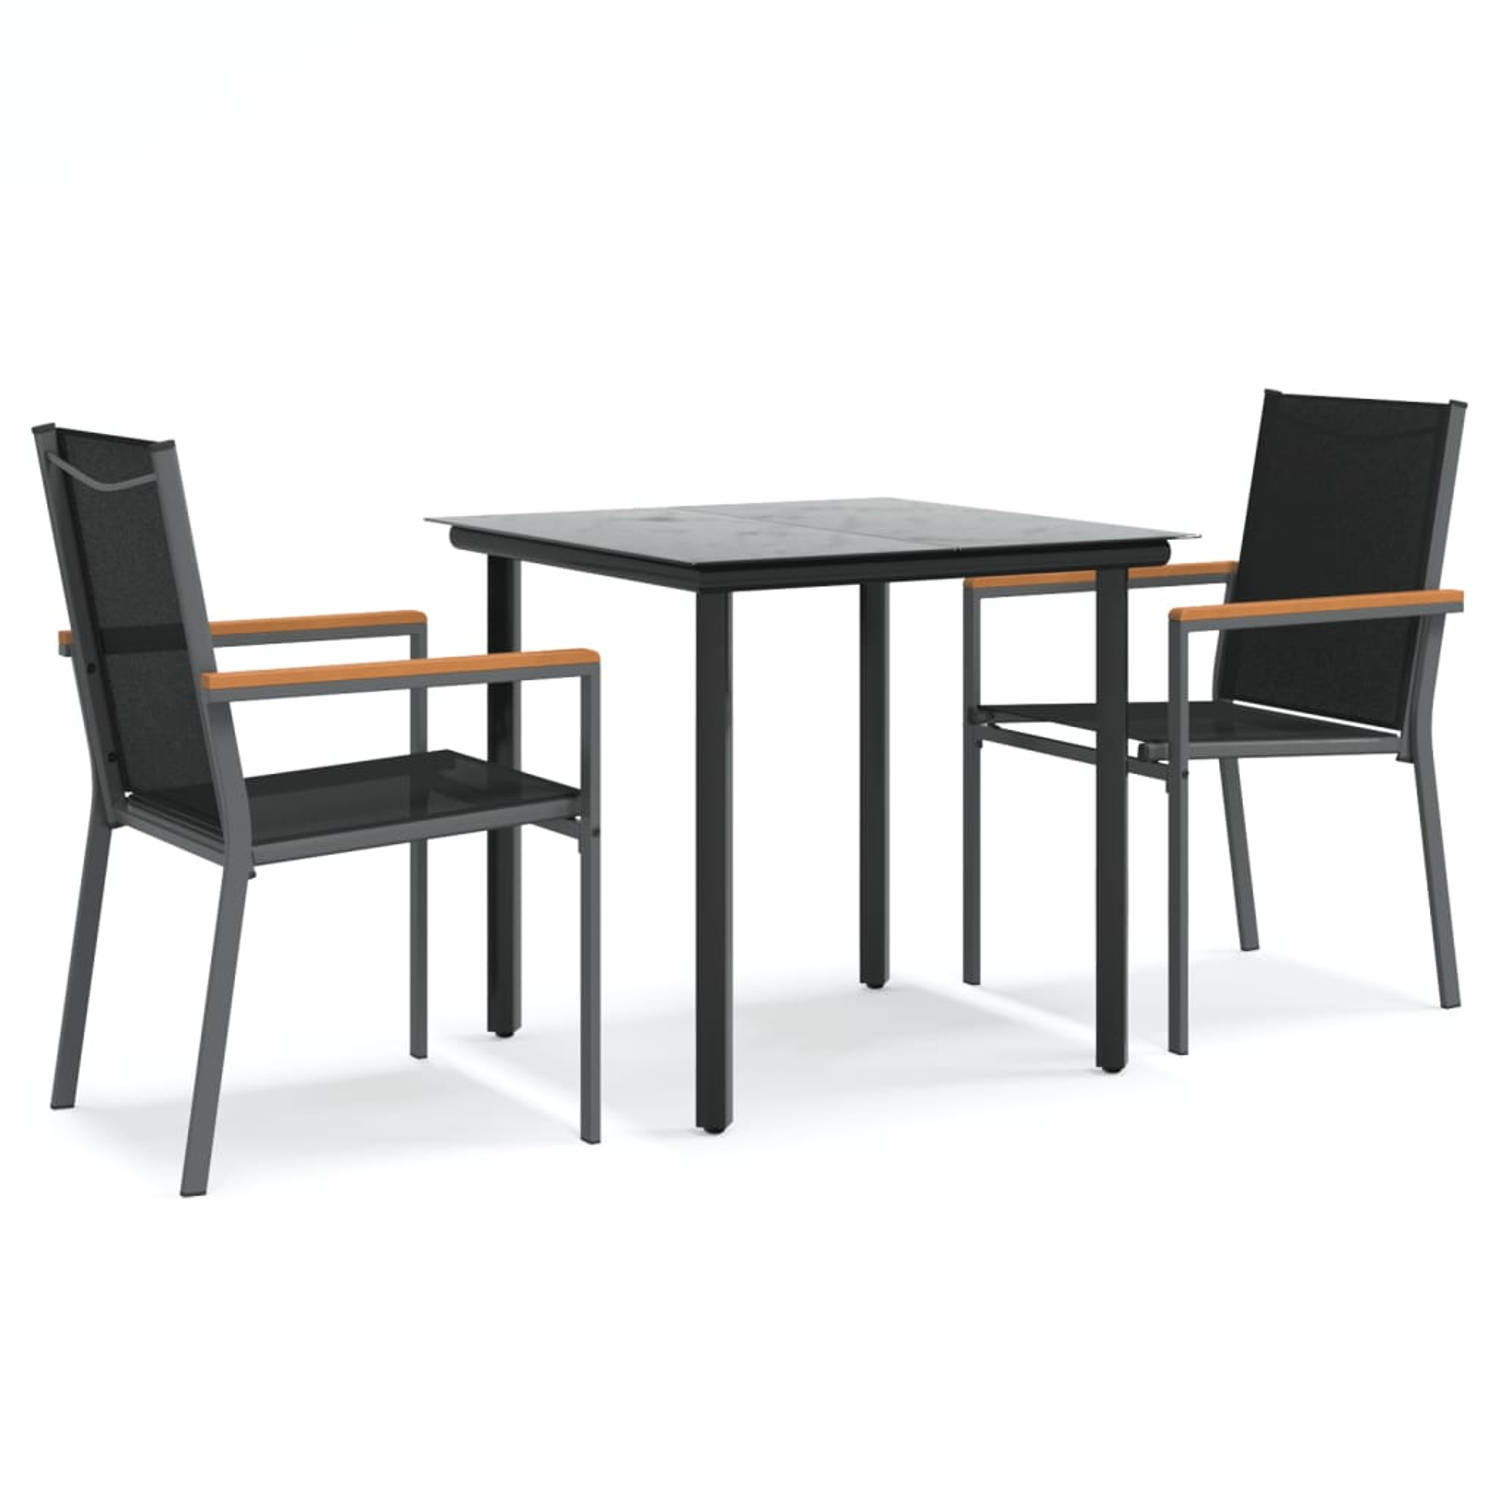 The Living Store Tuinset - Comfort - Eethoek - 80 x 80 x 74 cm - Zwarte textileen stoelen en stalen tafel